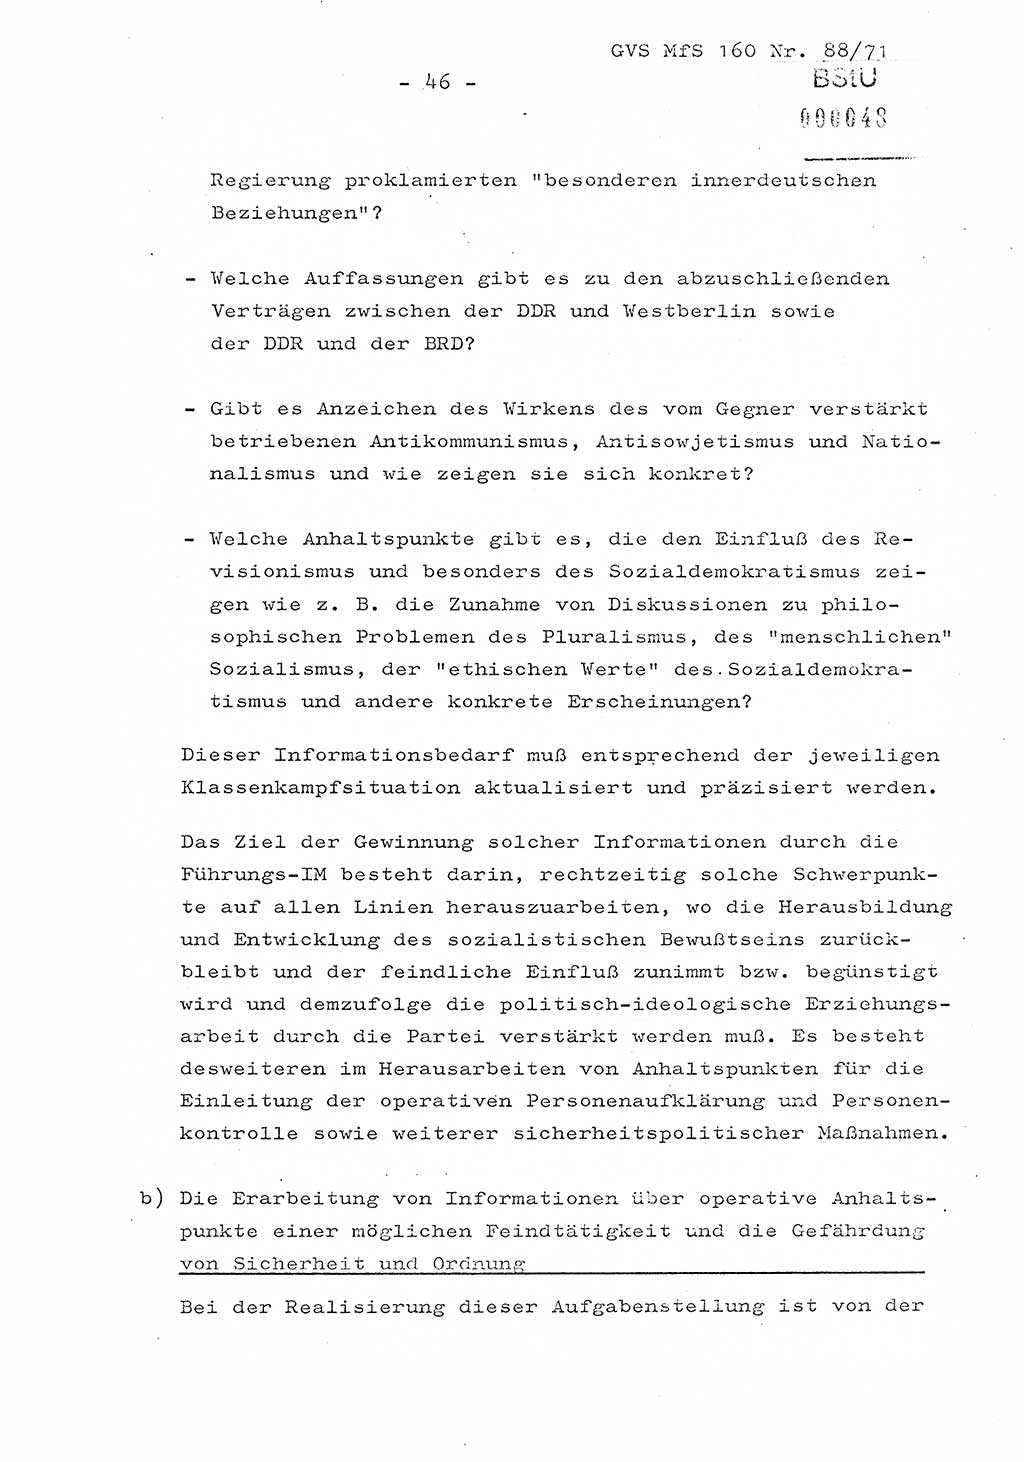 Dissertation Oberstleutnant Josef Schwarz (BV Schwerin), Major Fritz Amm (JHS), Hauptmann Peter Gräßler (JHS), Ministerium für Staatssicherheit (MfS) [Deutsche Demokratische Republik (DDR)], Juristische Hochschule (JHS), Geheime Verschlußsache (GVS) 160-88/71, Potsdam 1972, Seite 46 (Diss. MfS DDR JHS GVS 160-88/71 1972, S. 46)